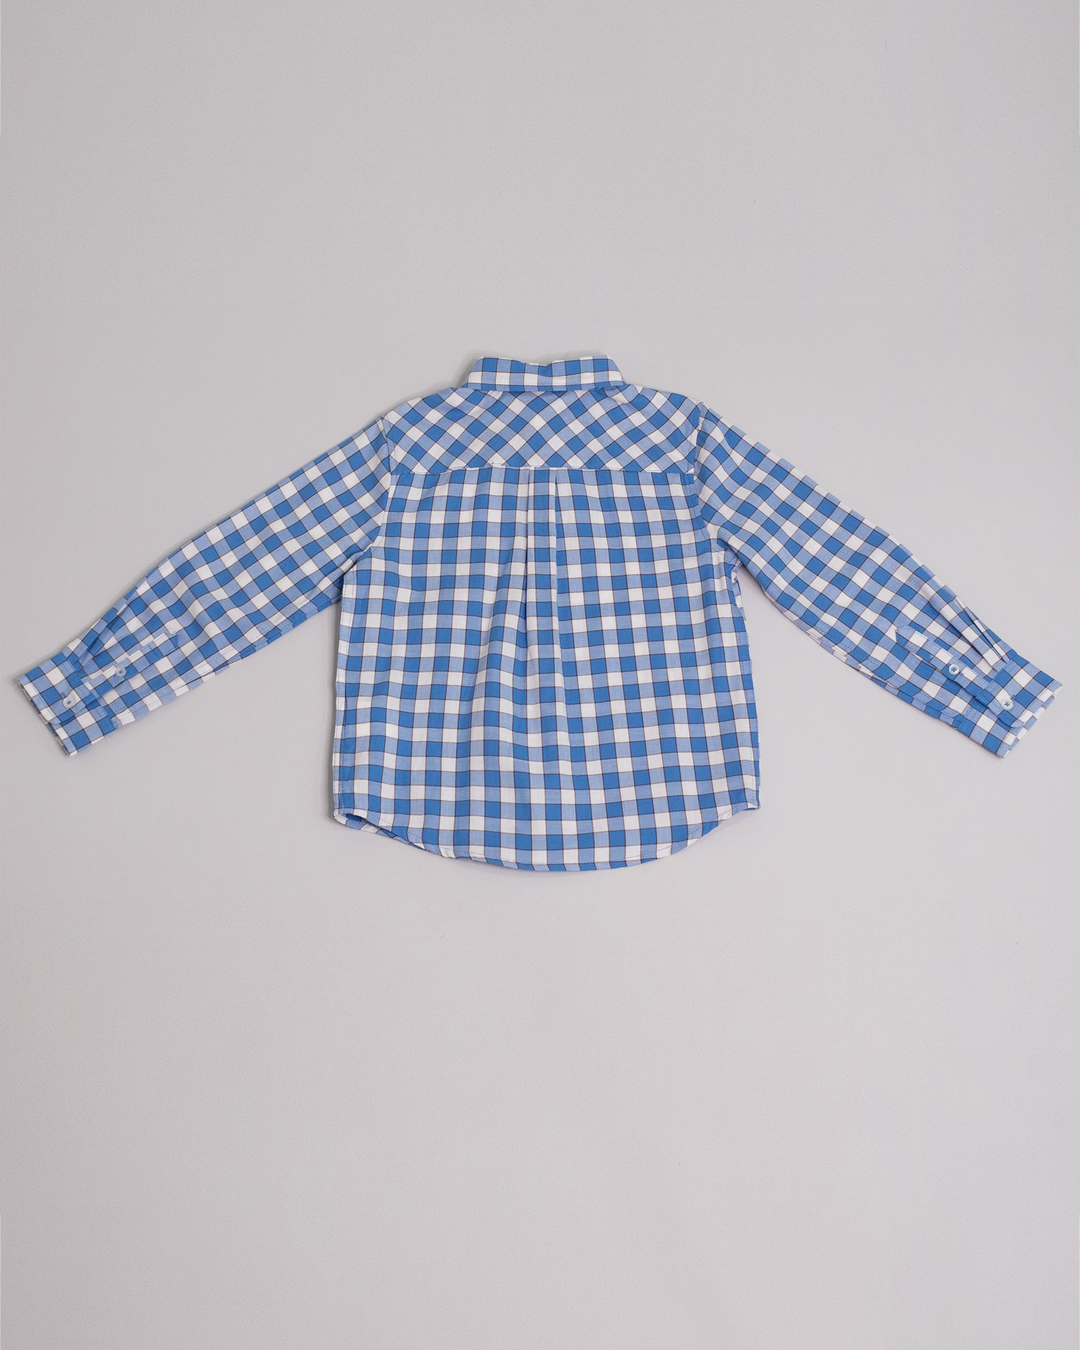 Camisa manga larga de cuadros azules y blancos con detalles marrones